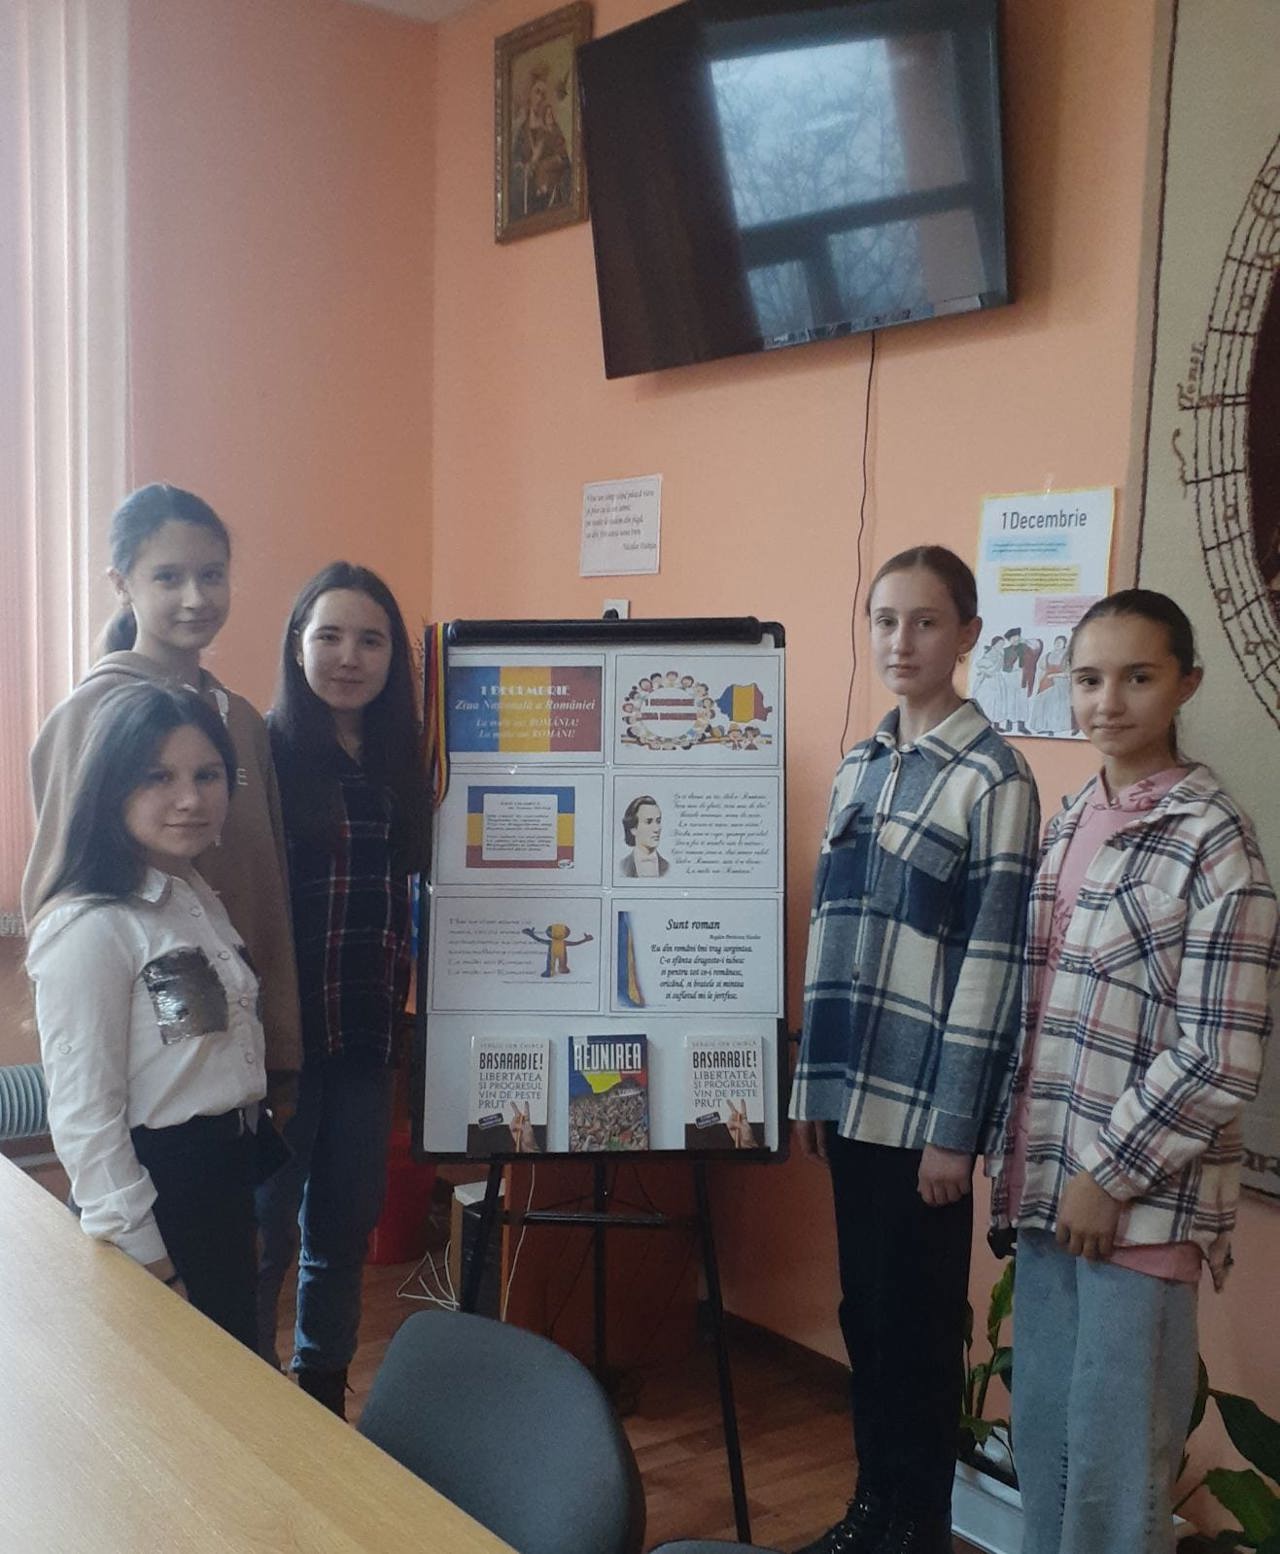 ОТ СЕРДЦА К СЕРДЦУ// Благотворительная акция, инициированная учениками школы в Бухаресте для учащихся учебного заведения за Прутом